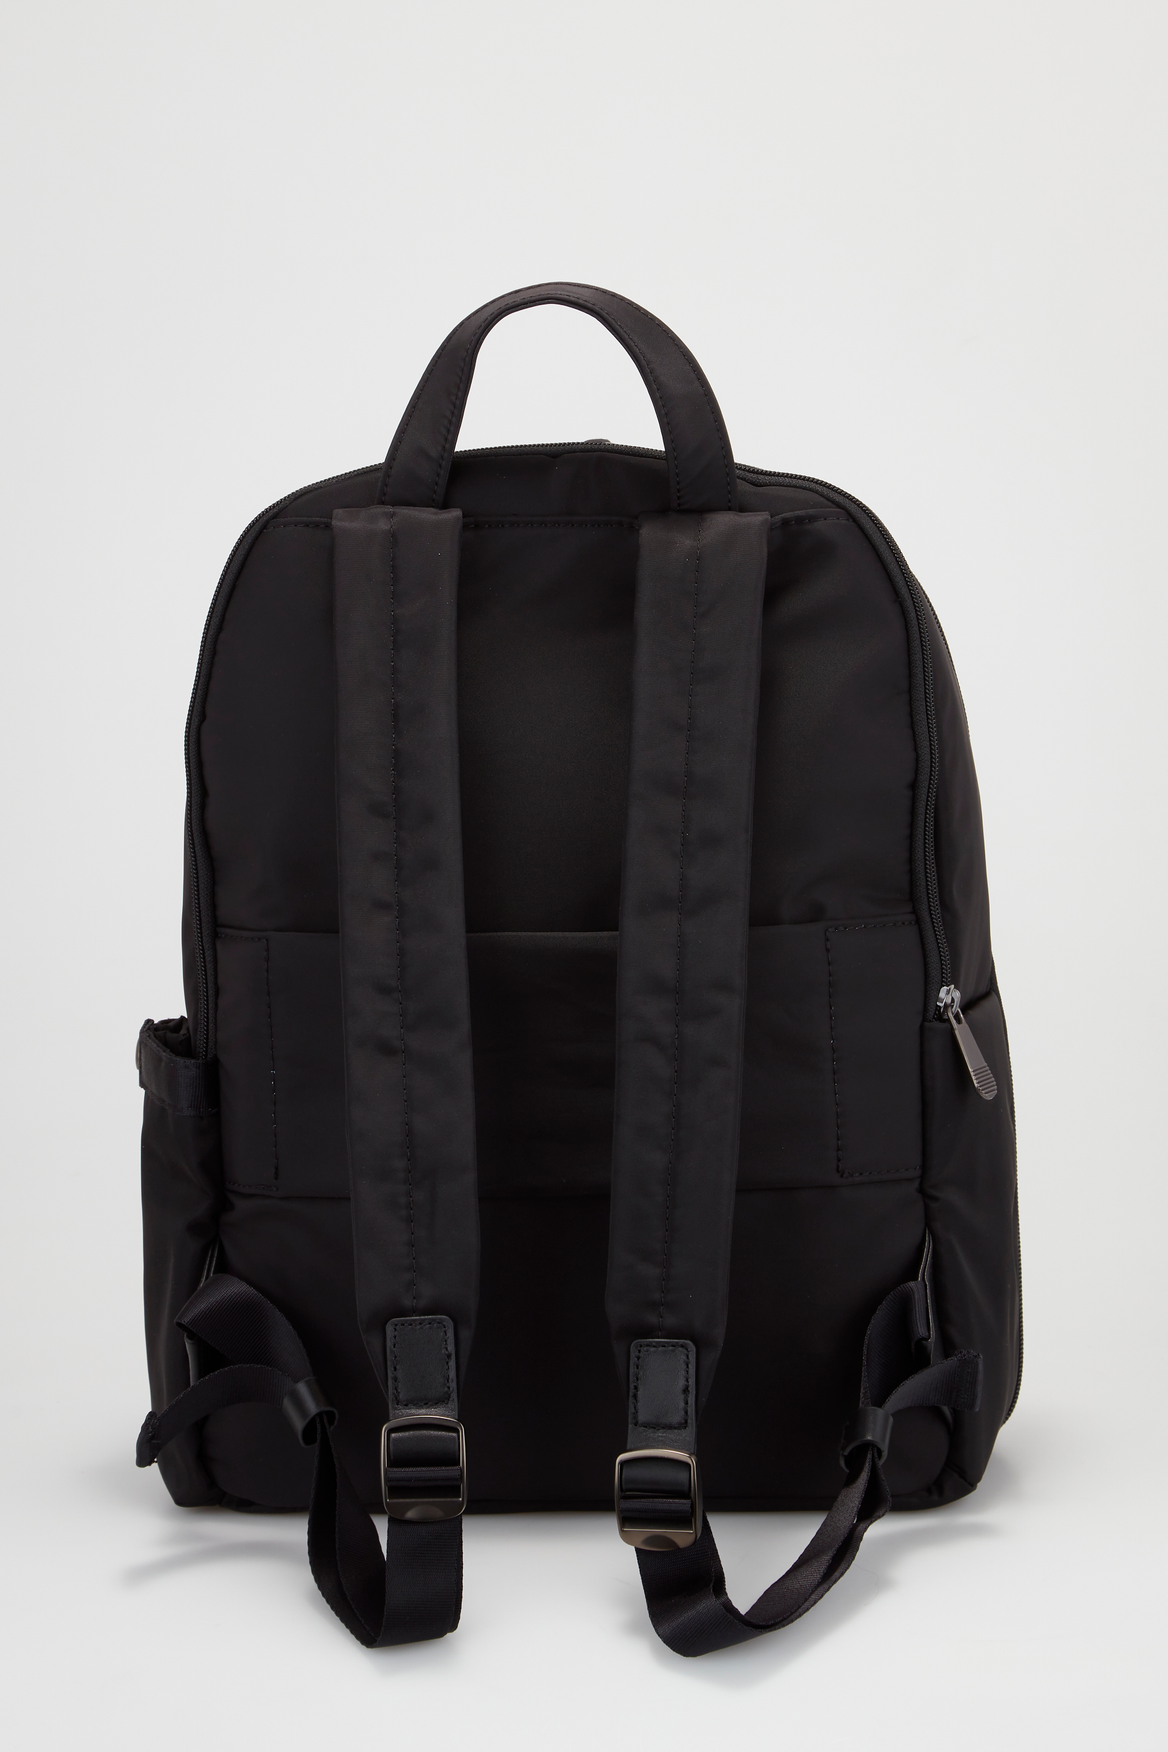 Antler Chelsea Large Backpack – Strandbags Australia